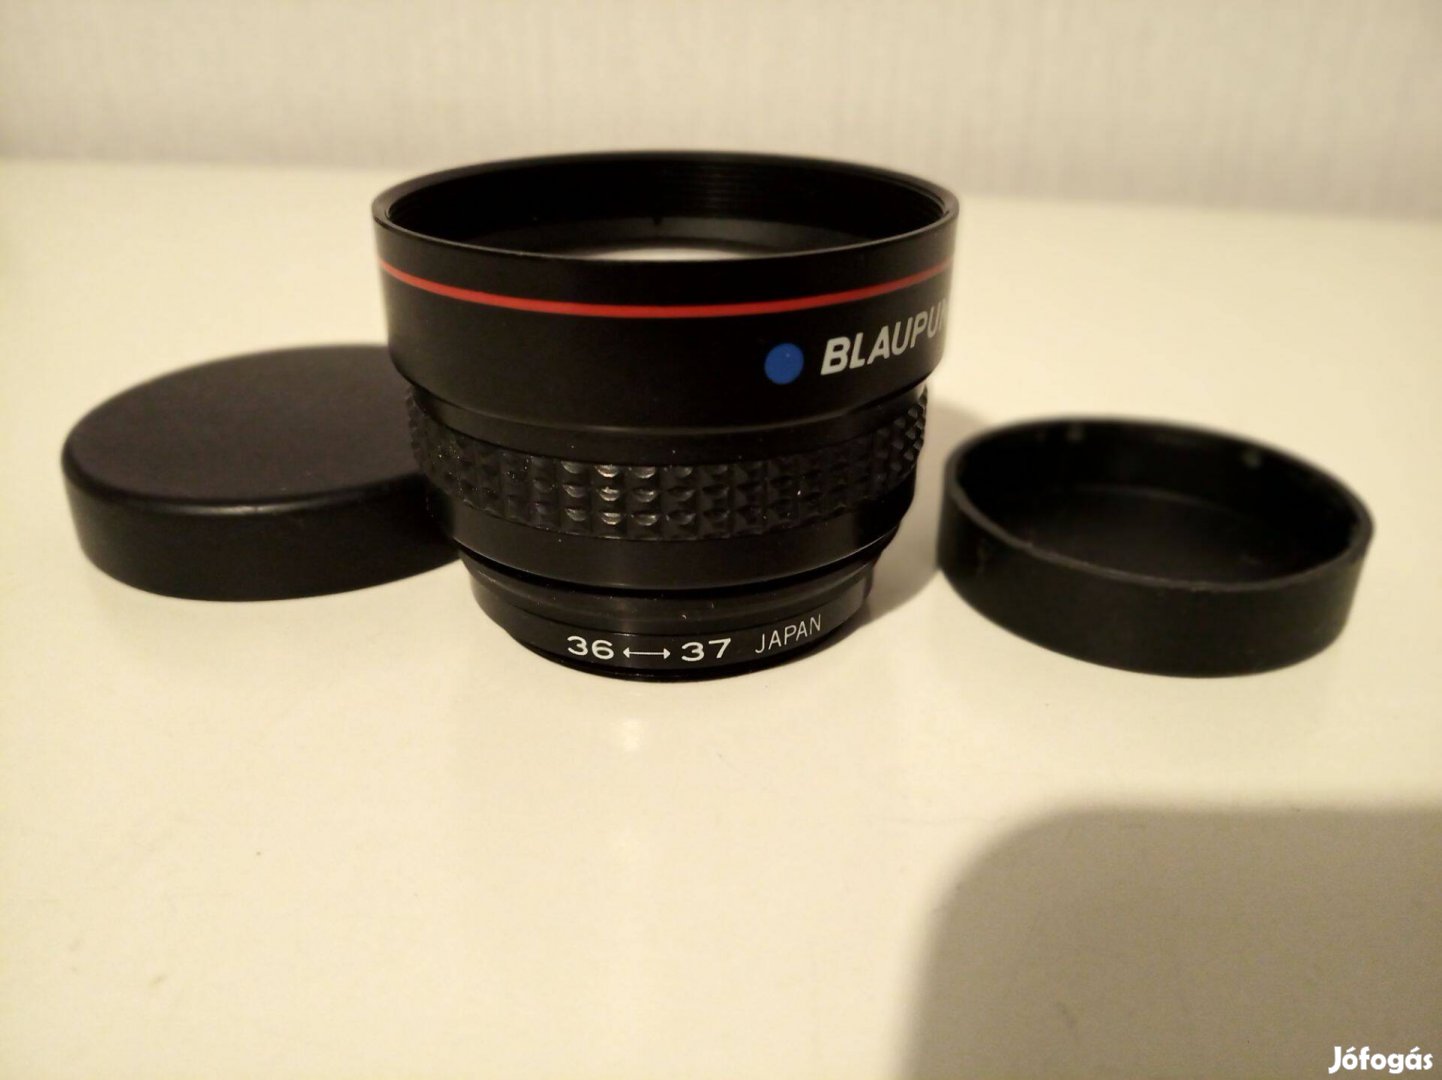 Blaupunkt Tele conversion Lens Japan előtét lencse